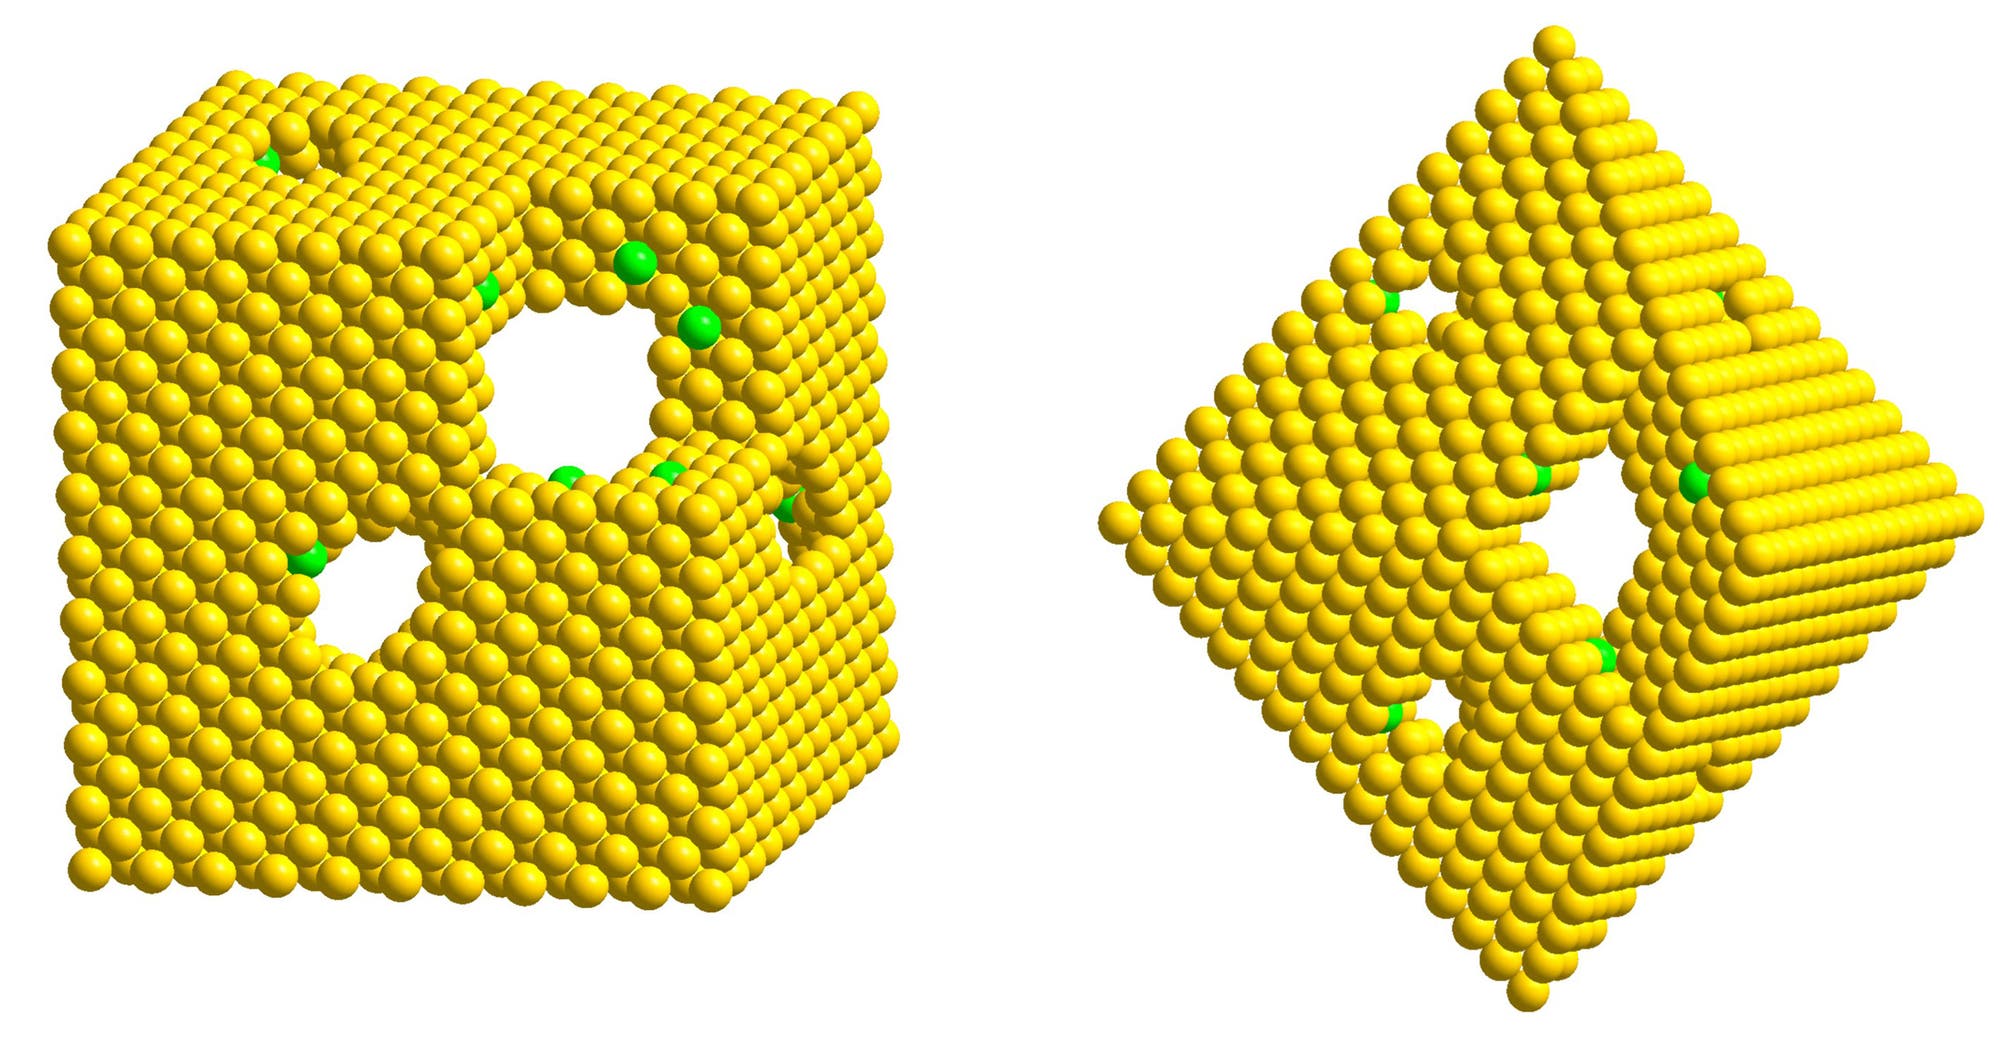 Modell der hohlen Platin-Nanostrukturen